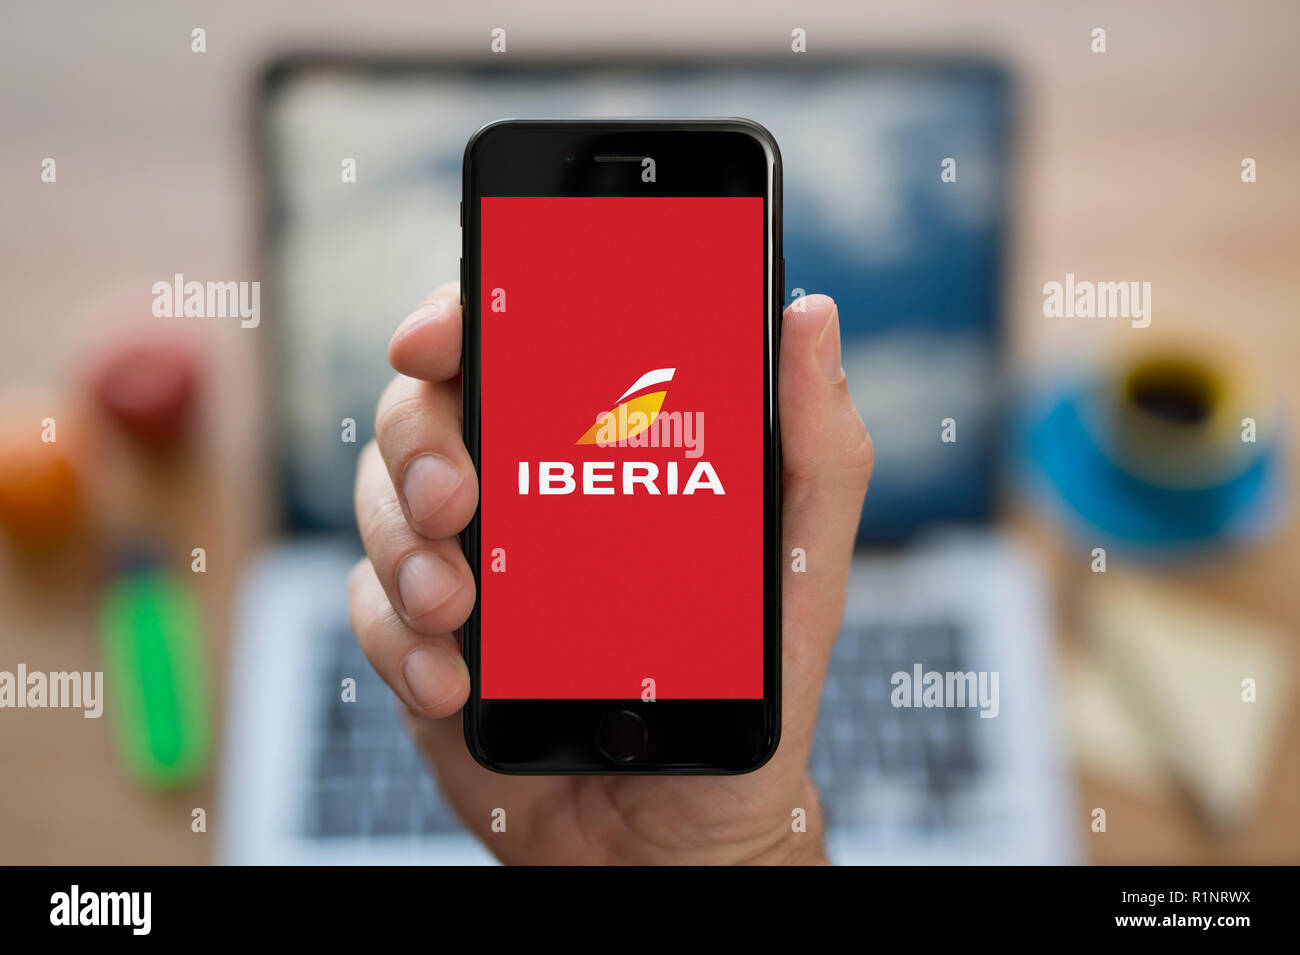 Un hombre mira el iPhone que muestra el logotipo de Iberia, mientras estaba sentado en su escritorio de ordenador (uso Editorial solamente). Foto de stock